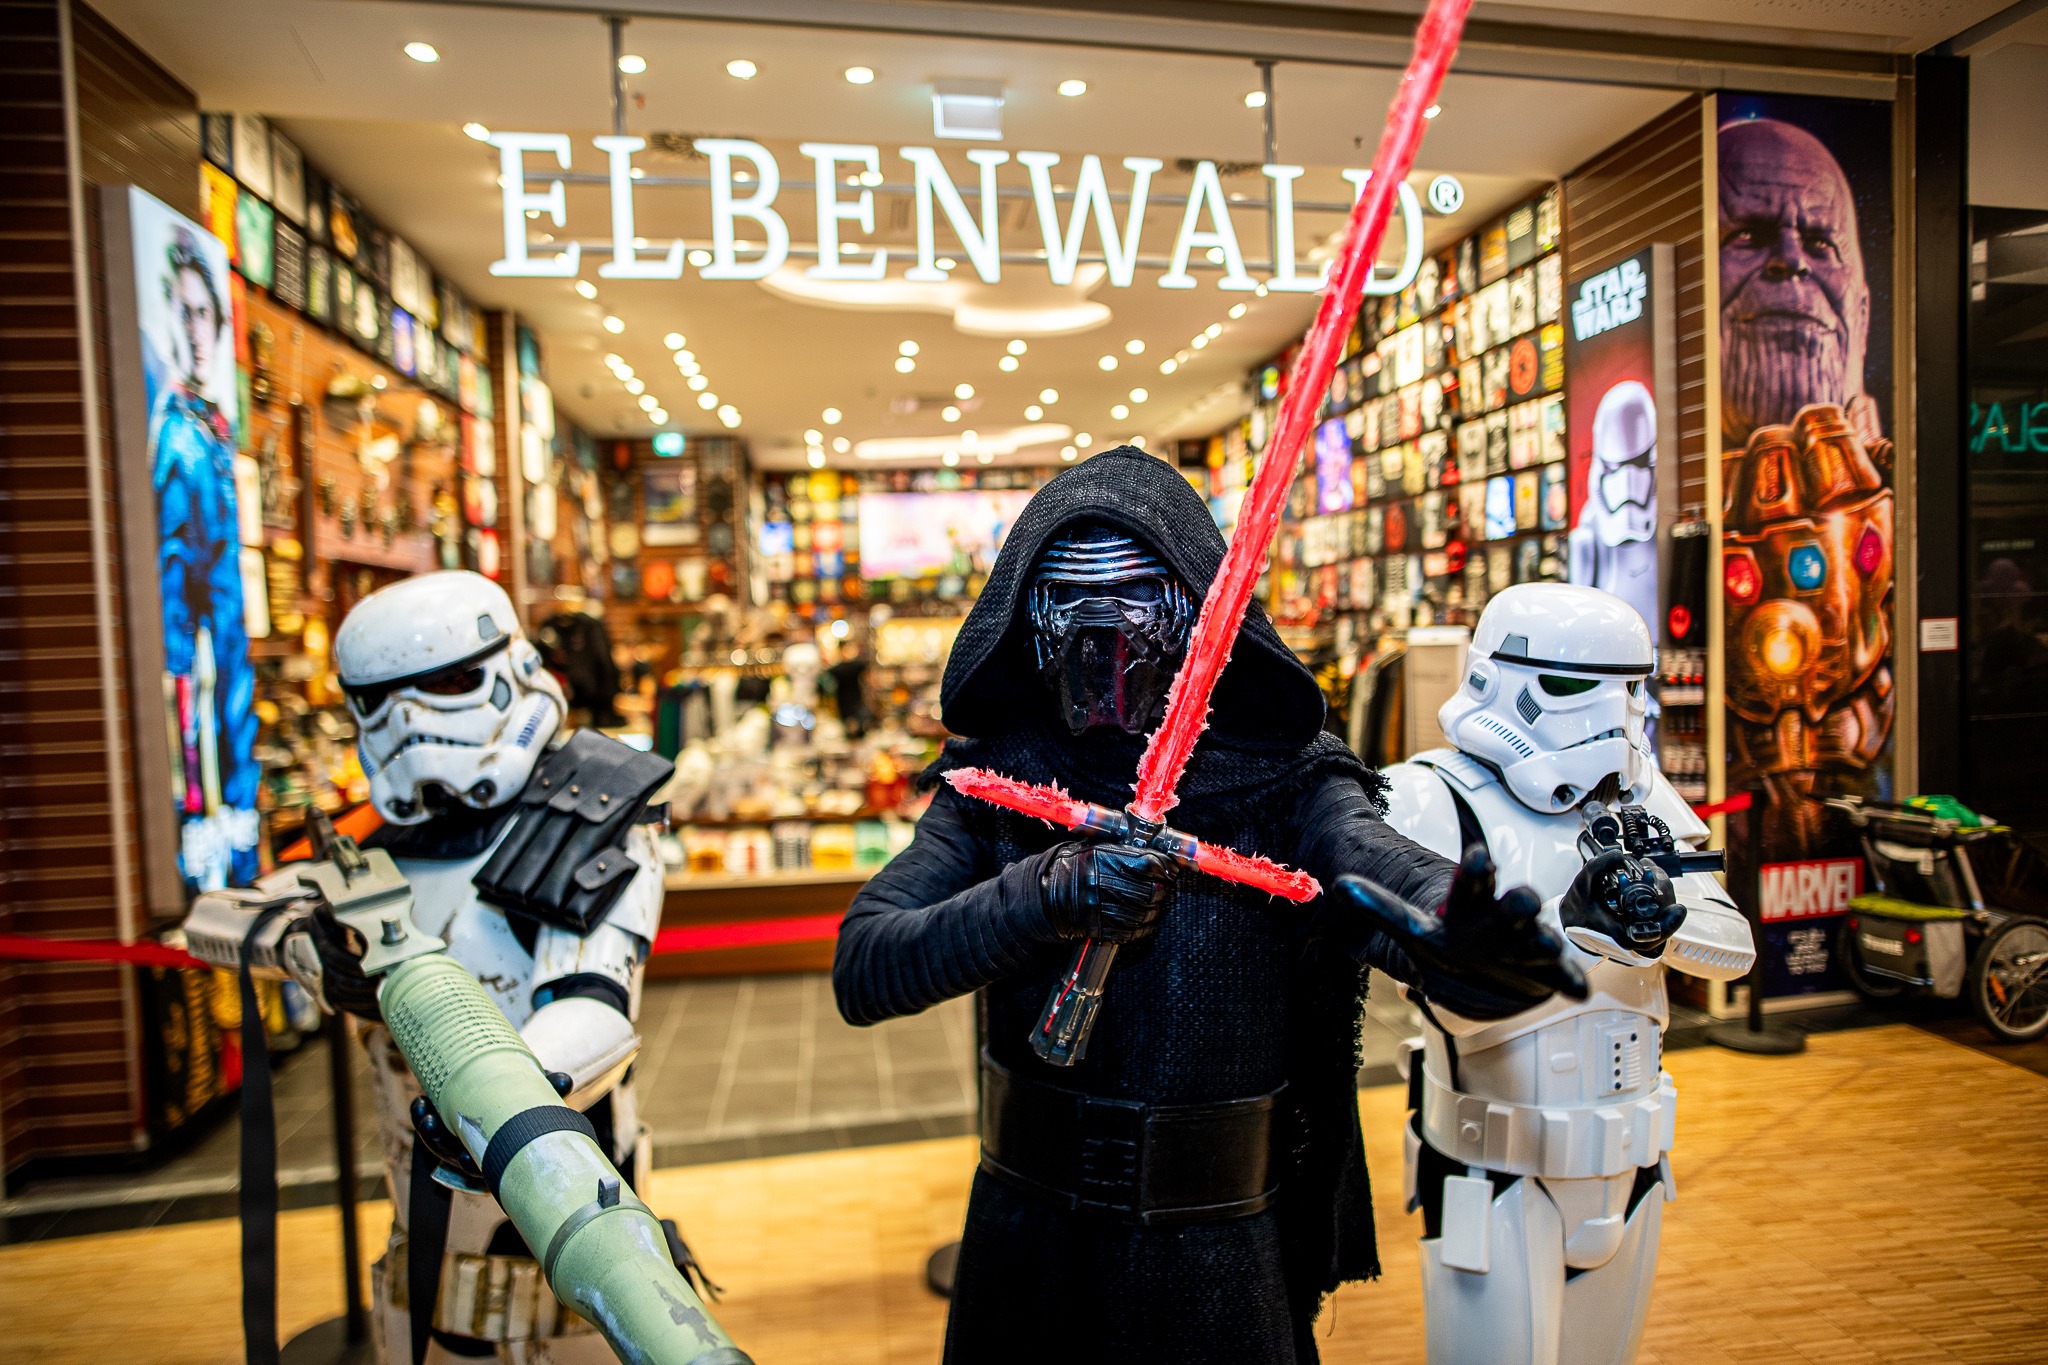 Das Foto zeigt drei Cosplayer in Kostümen aus dem FIlm Star Wars. Sie posieren für dem Eingang zu einem Elbenwald Store.